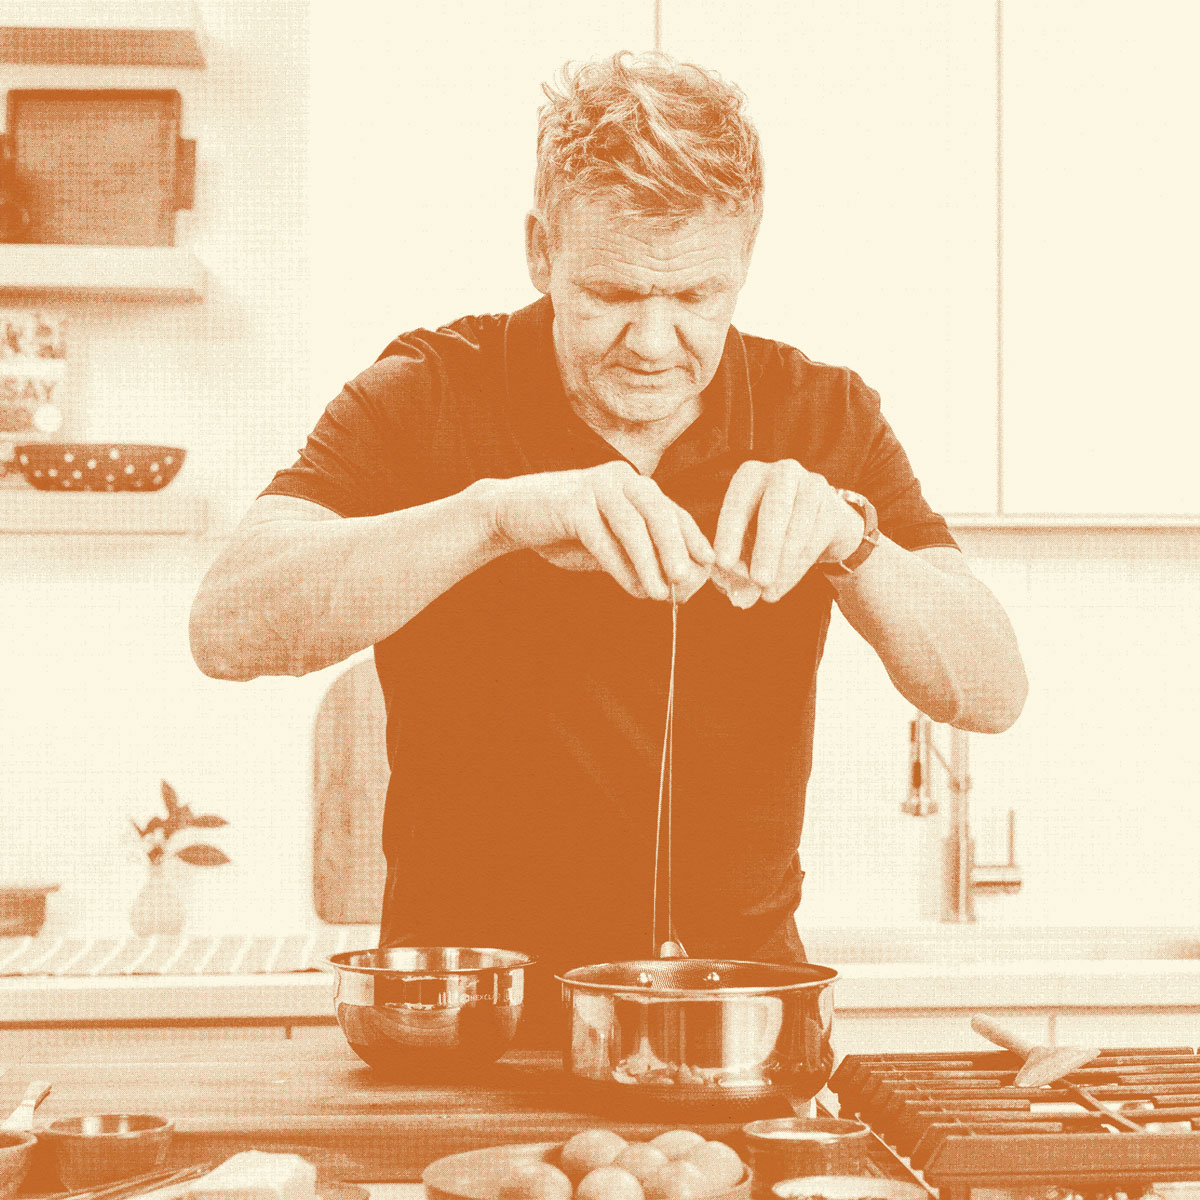 Chef Gordon Ramsay cracking an egg into a bowl. 